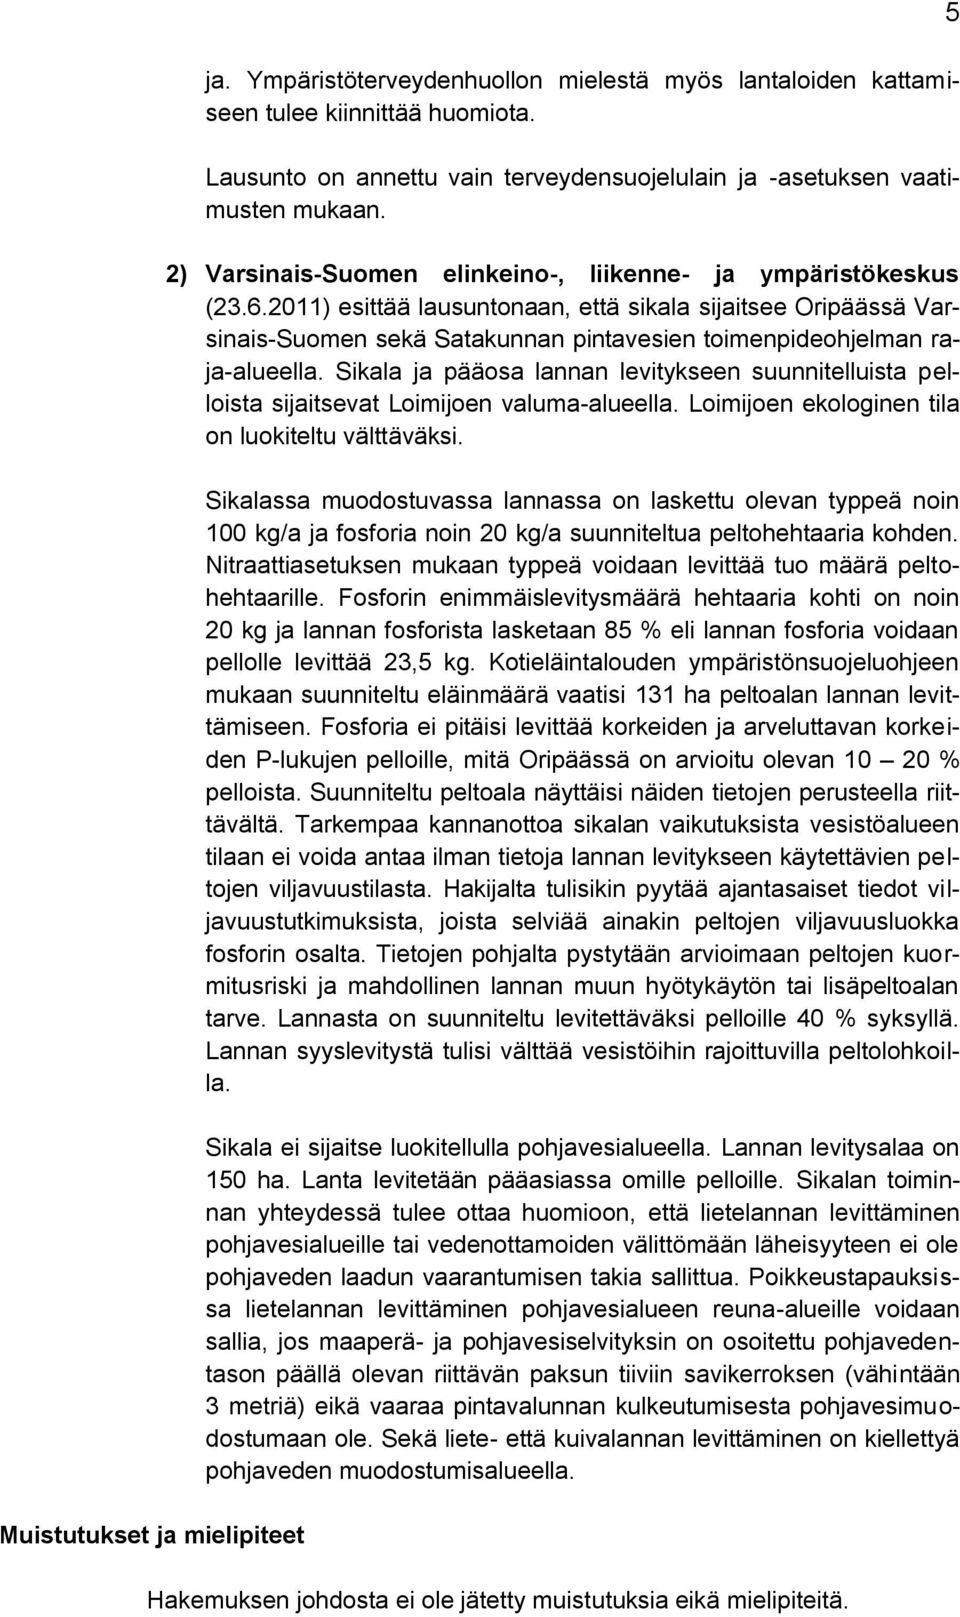 2011) esittää lausuntonaan, että sikala sijaitsee Oripäässä Varsinais-Suomen sekä Satakunnan pintavesien toimenpideohjelman raja-alueella.